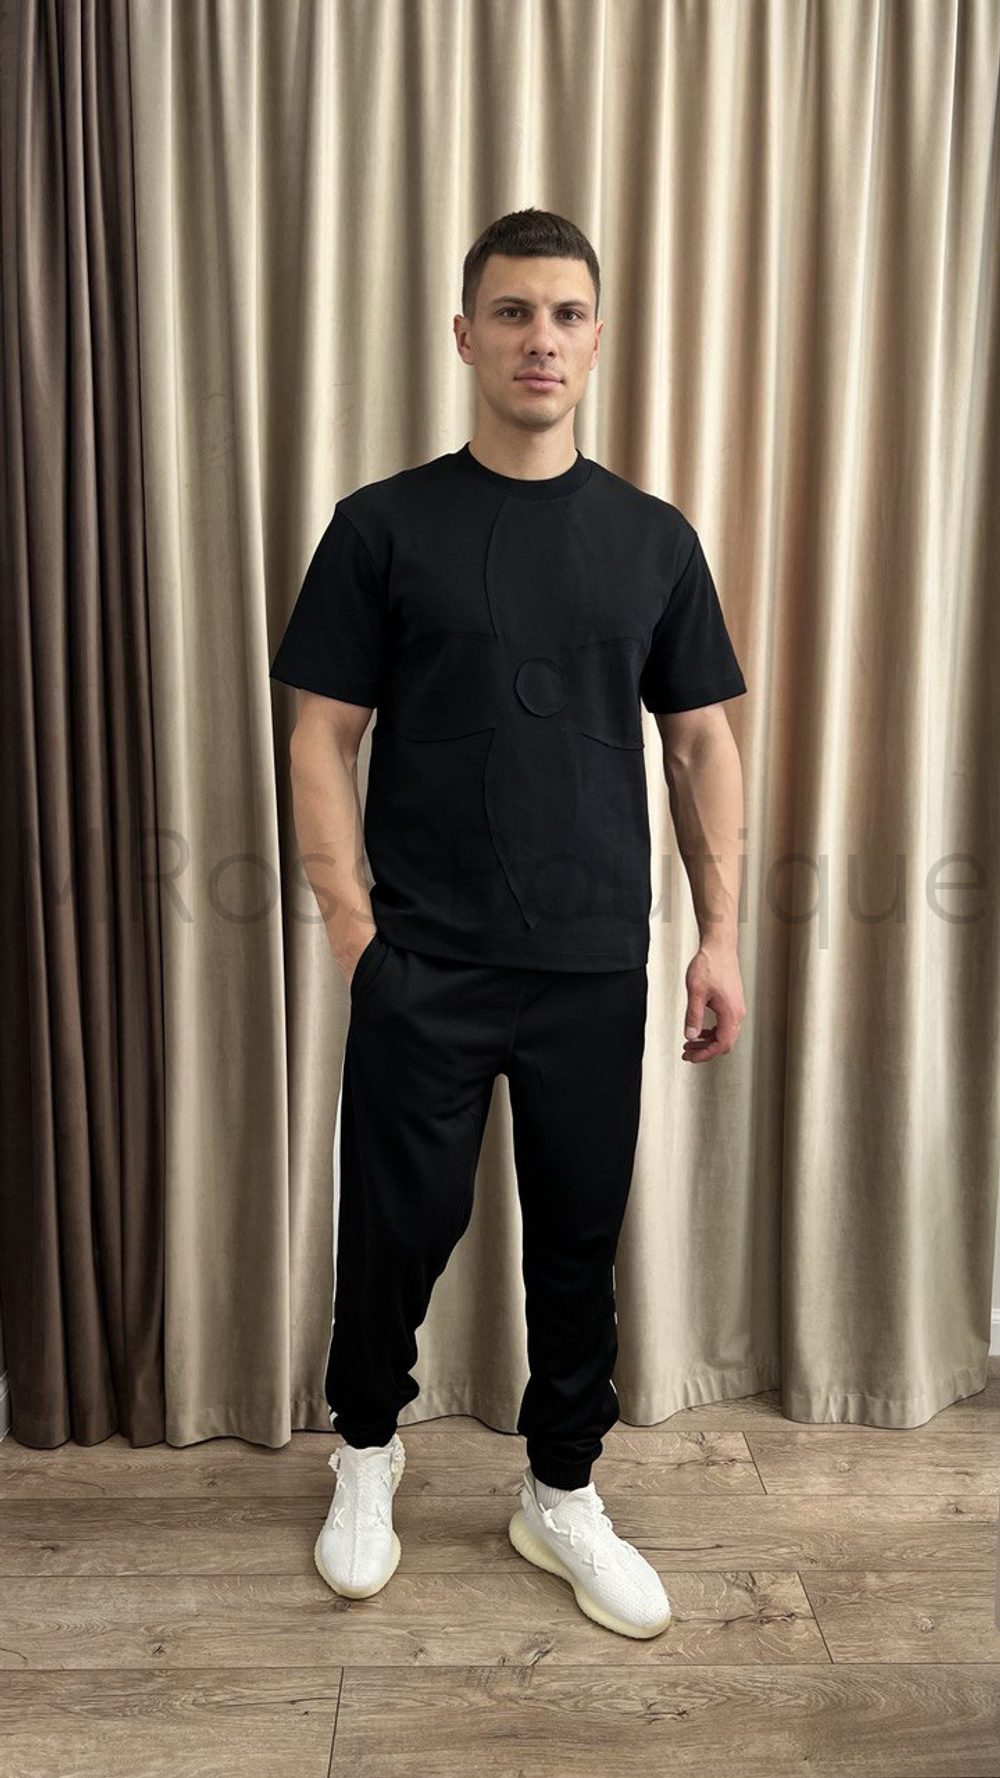 Черная футболка Луи Виттон (Louis Vuitton) оригинального качества в премиум классе выполнена из мягкого плотного джерси с нашивкой большого брендового цветка спереди. Футболка унисекс кроя оверсайз.